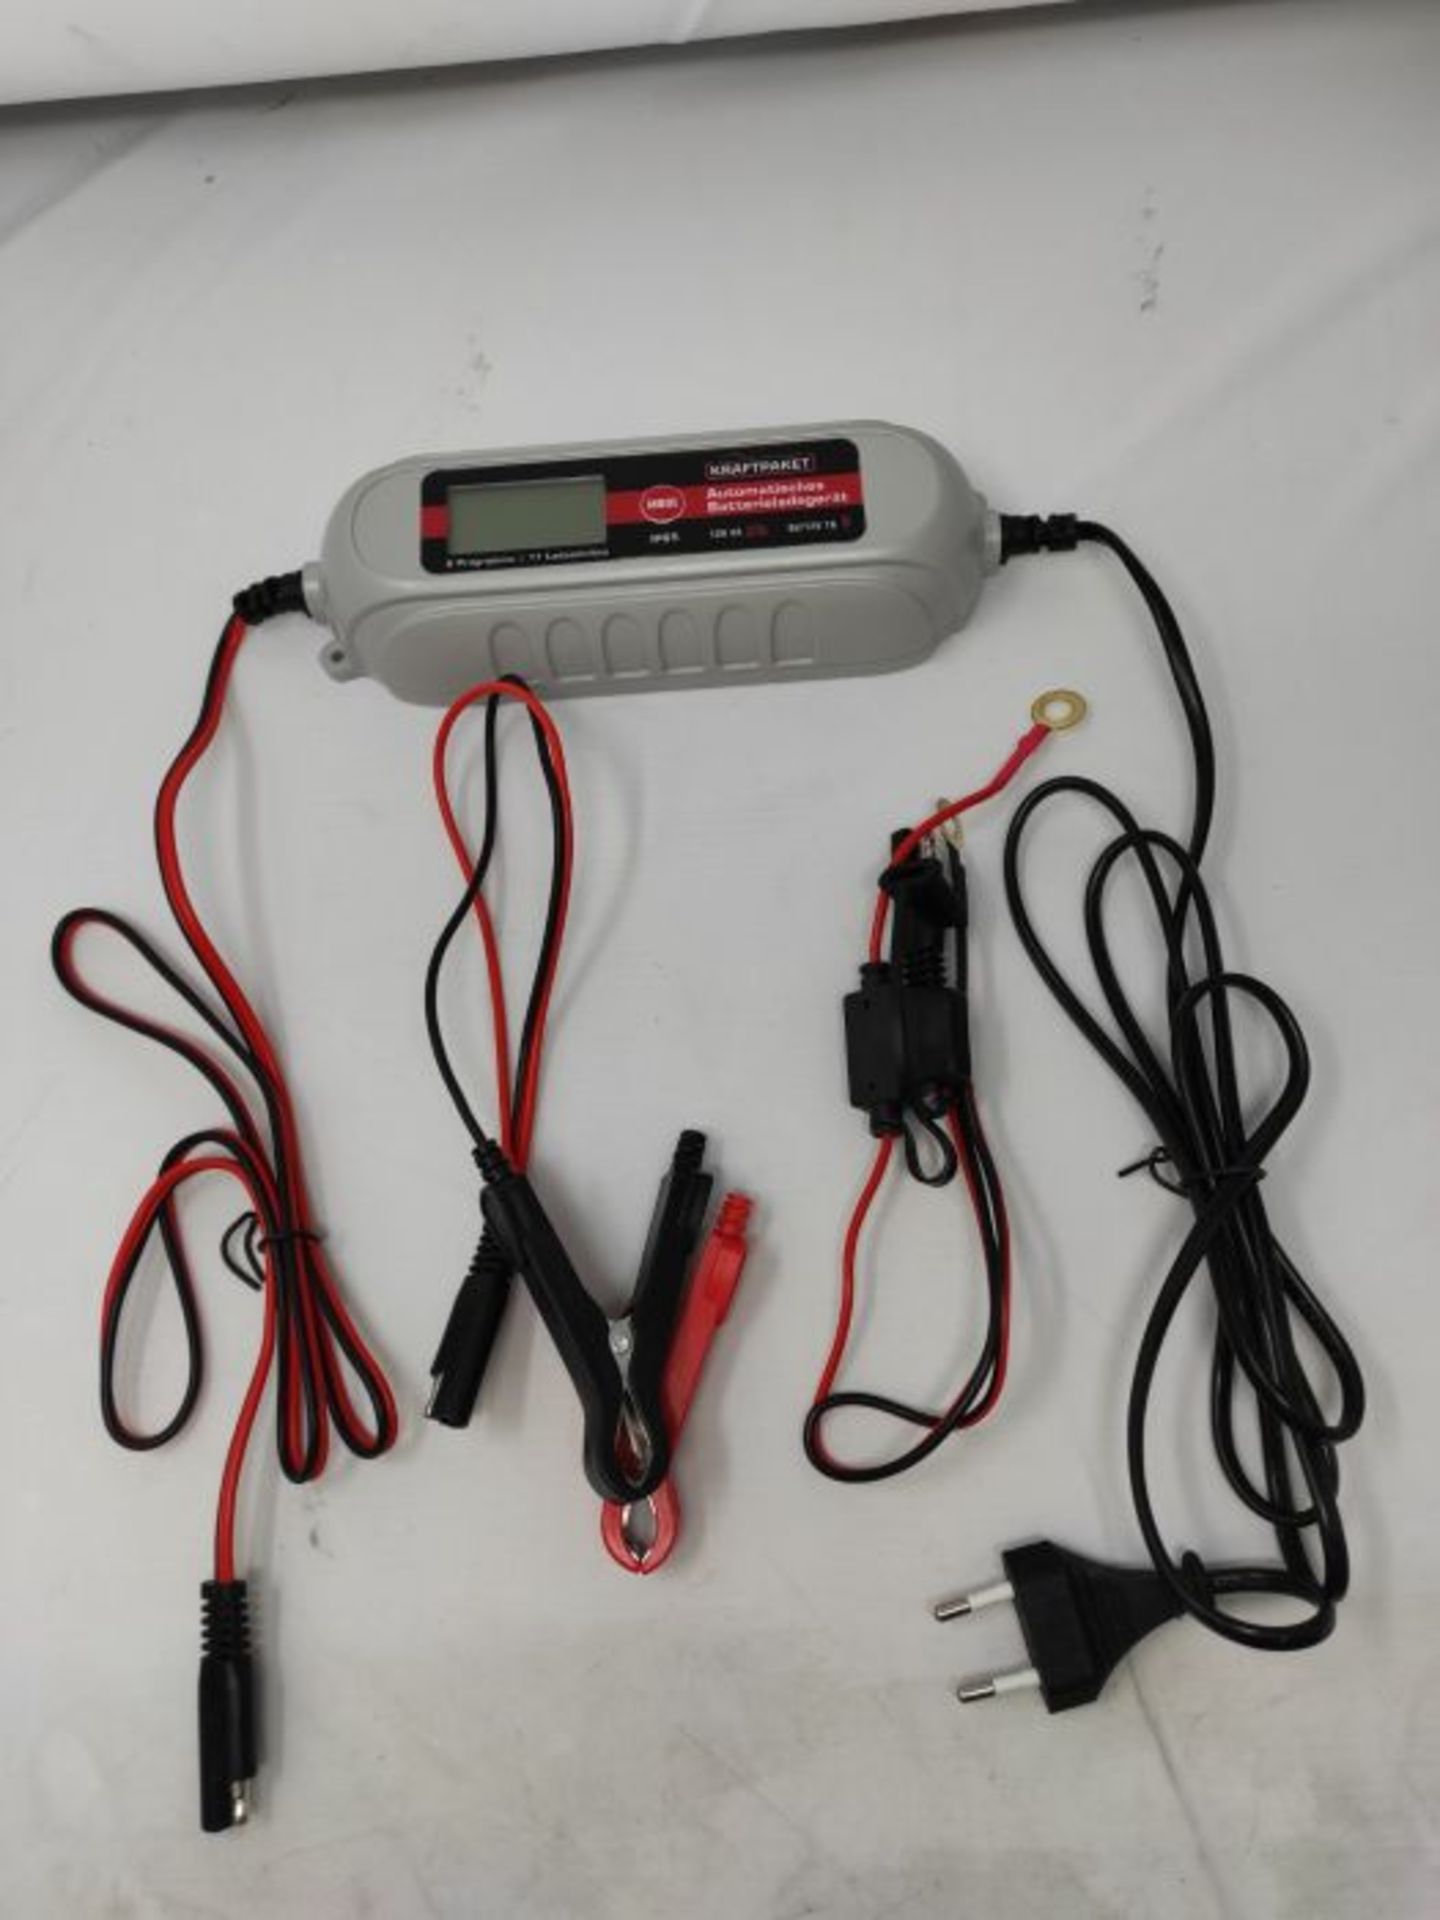 Dino KRAFTPAKET 136312 BatterieladegerÃ¤t 6V/12V-4A mit Batterietester und Erhaltung - Image 2 of 2